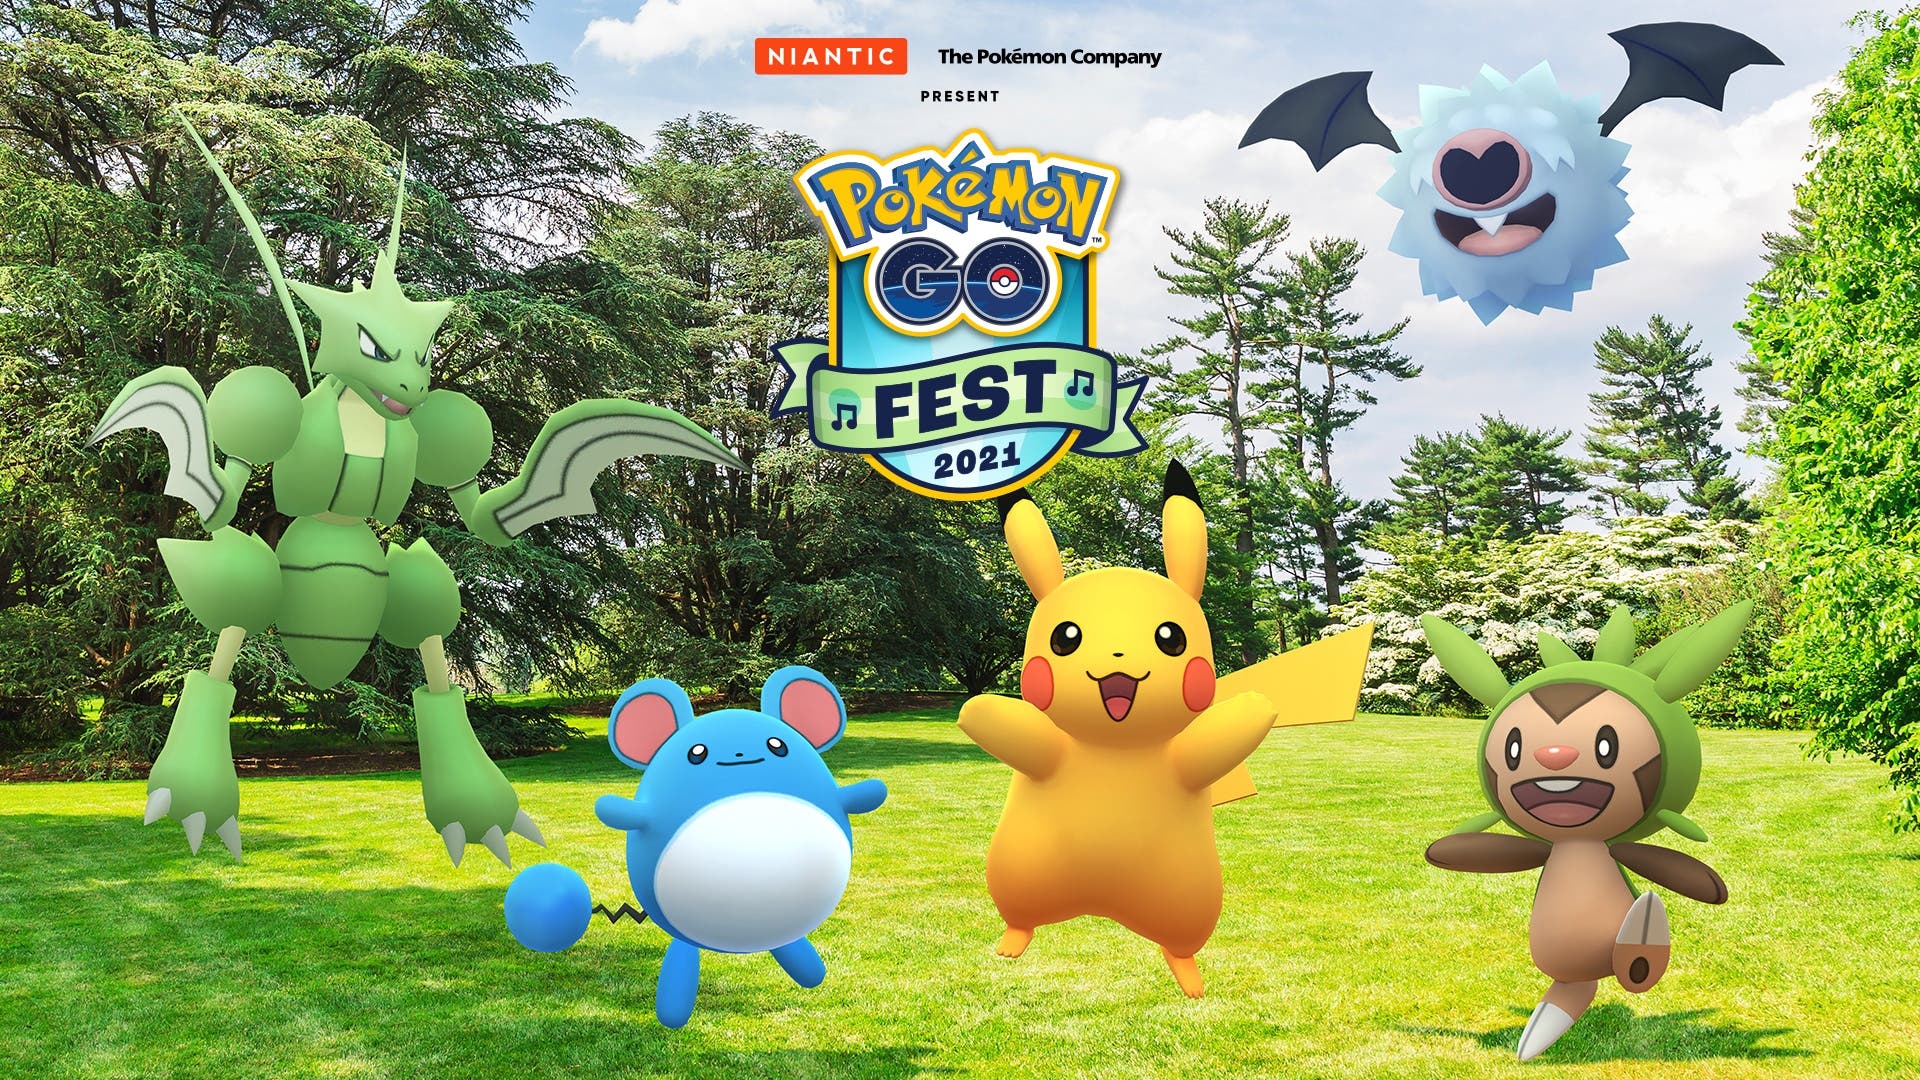 En unas horas se anunciarán más detalles del Pokémon GO Fest 2021